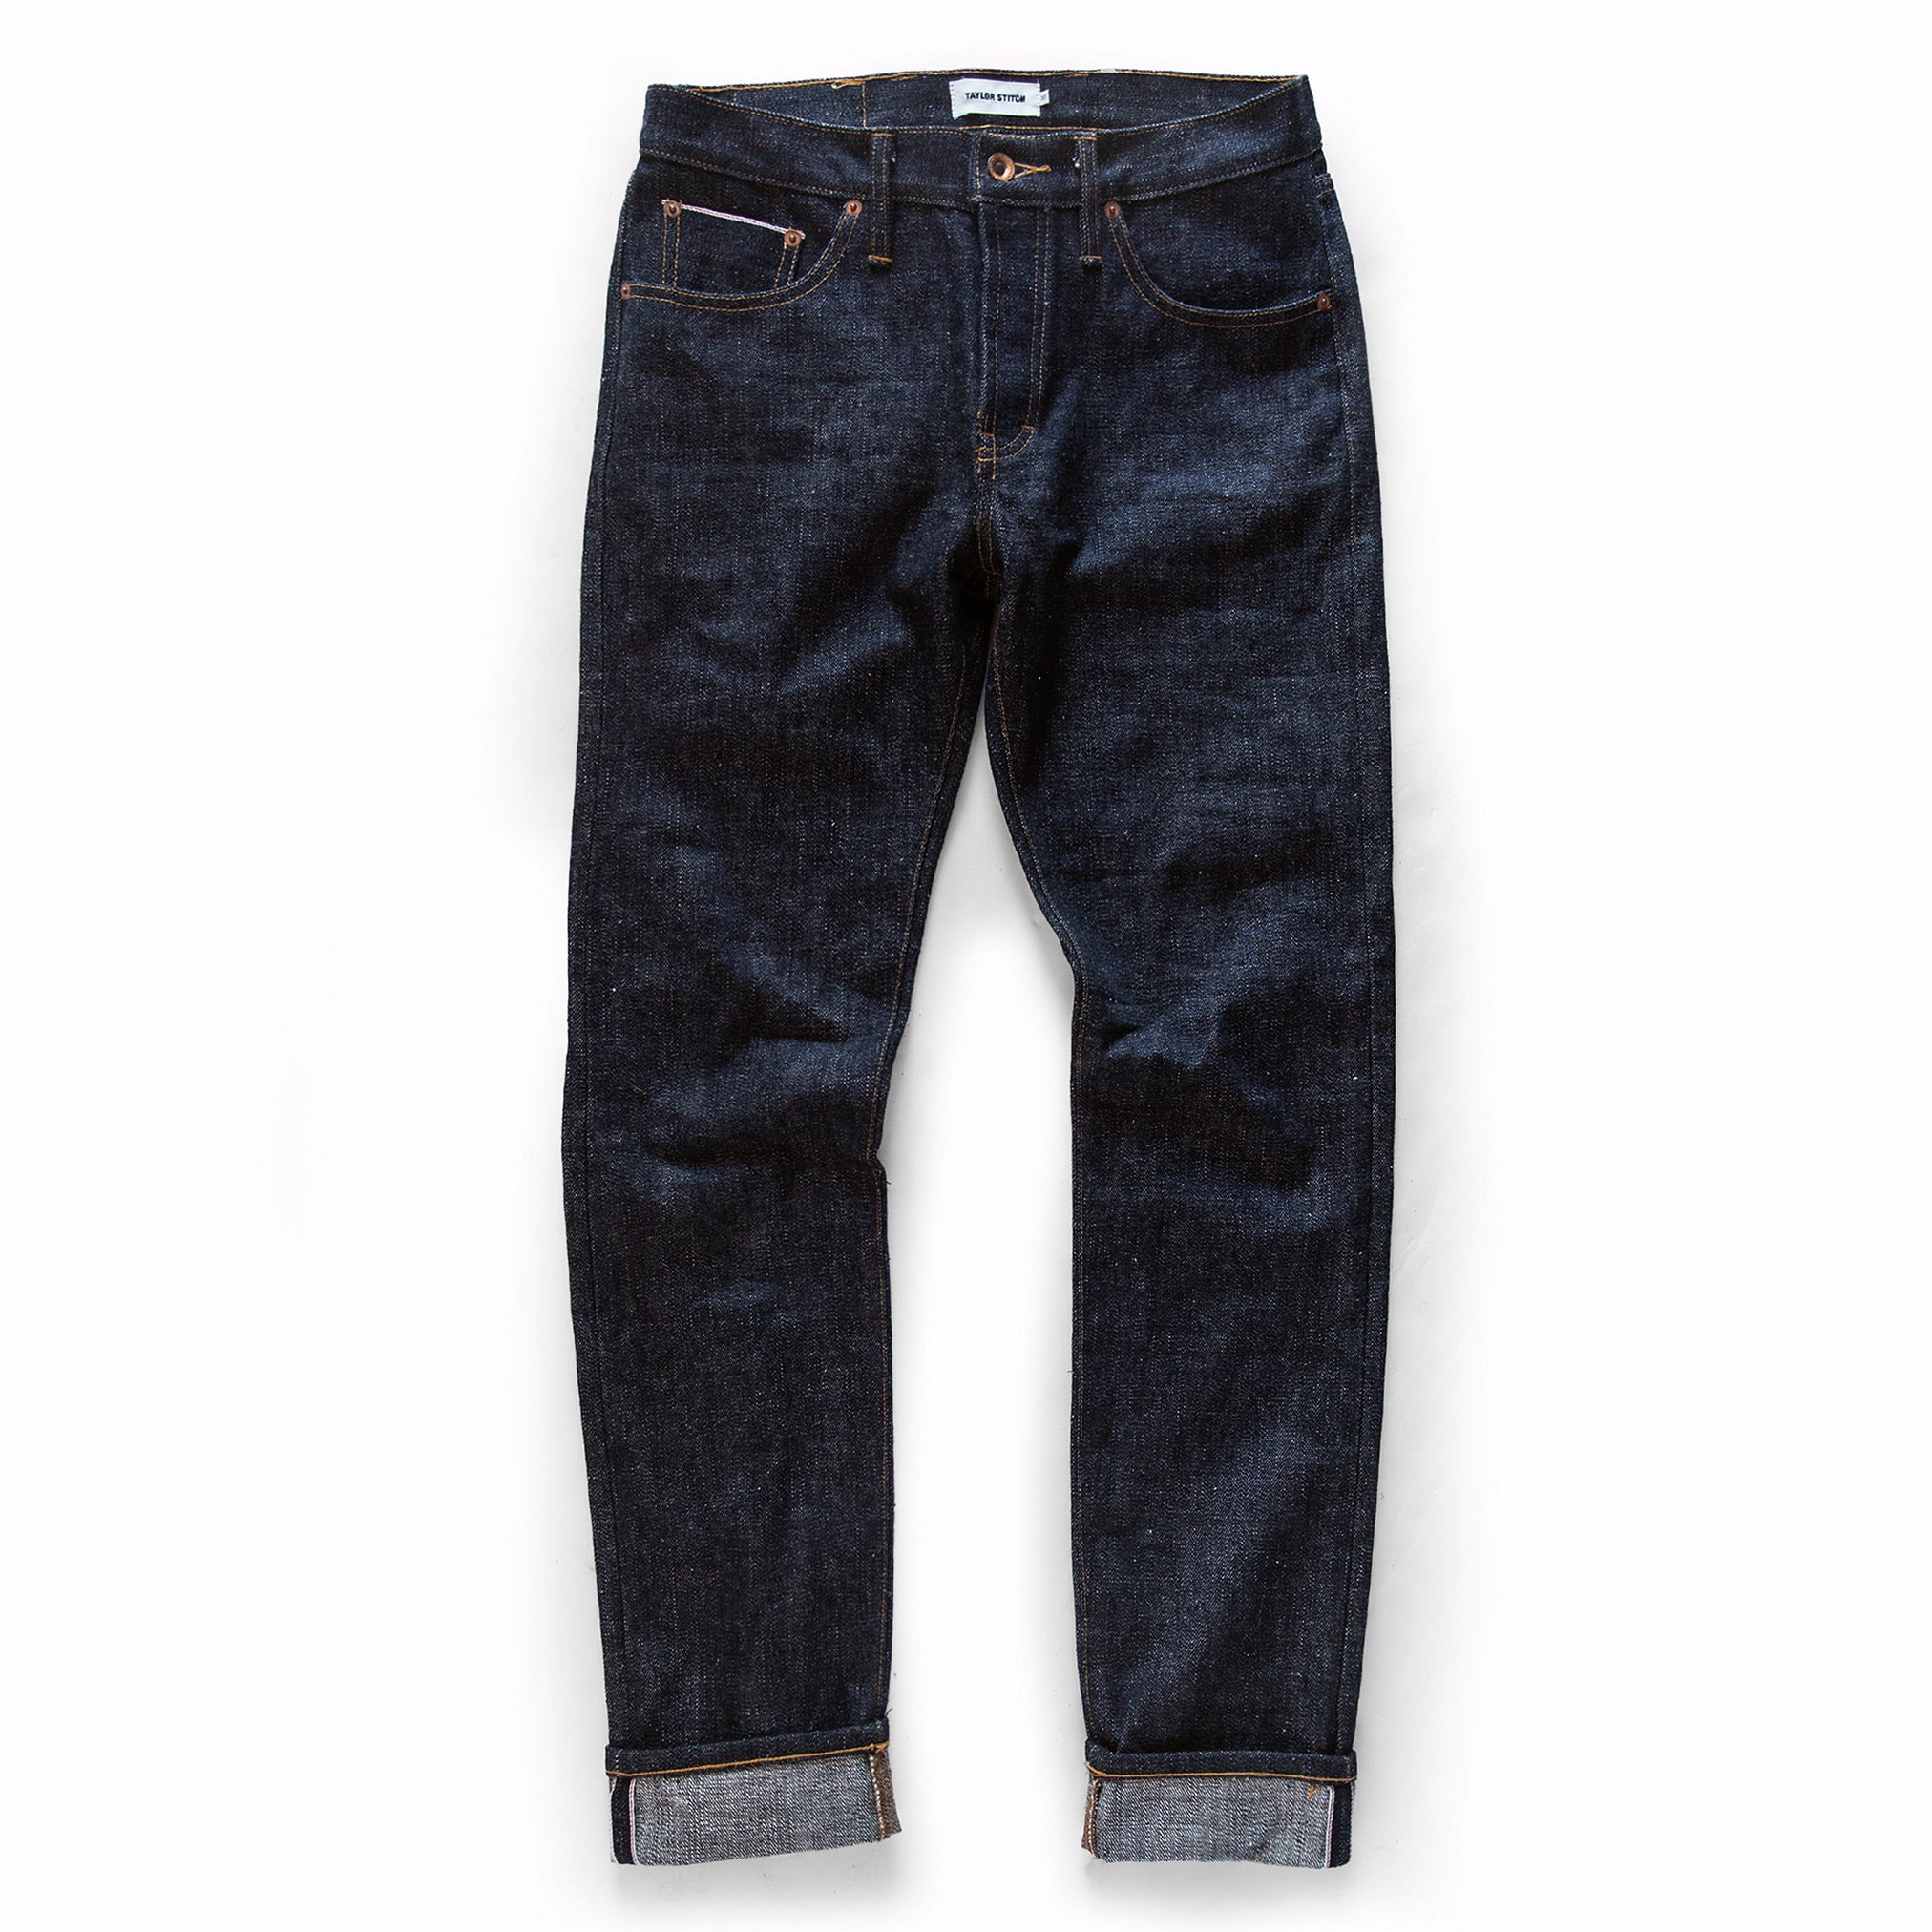 The Slim Jean in Umeda Selvage